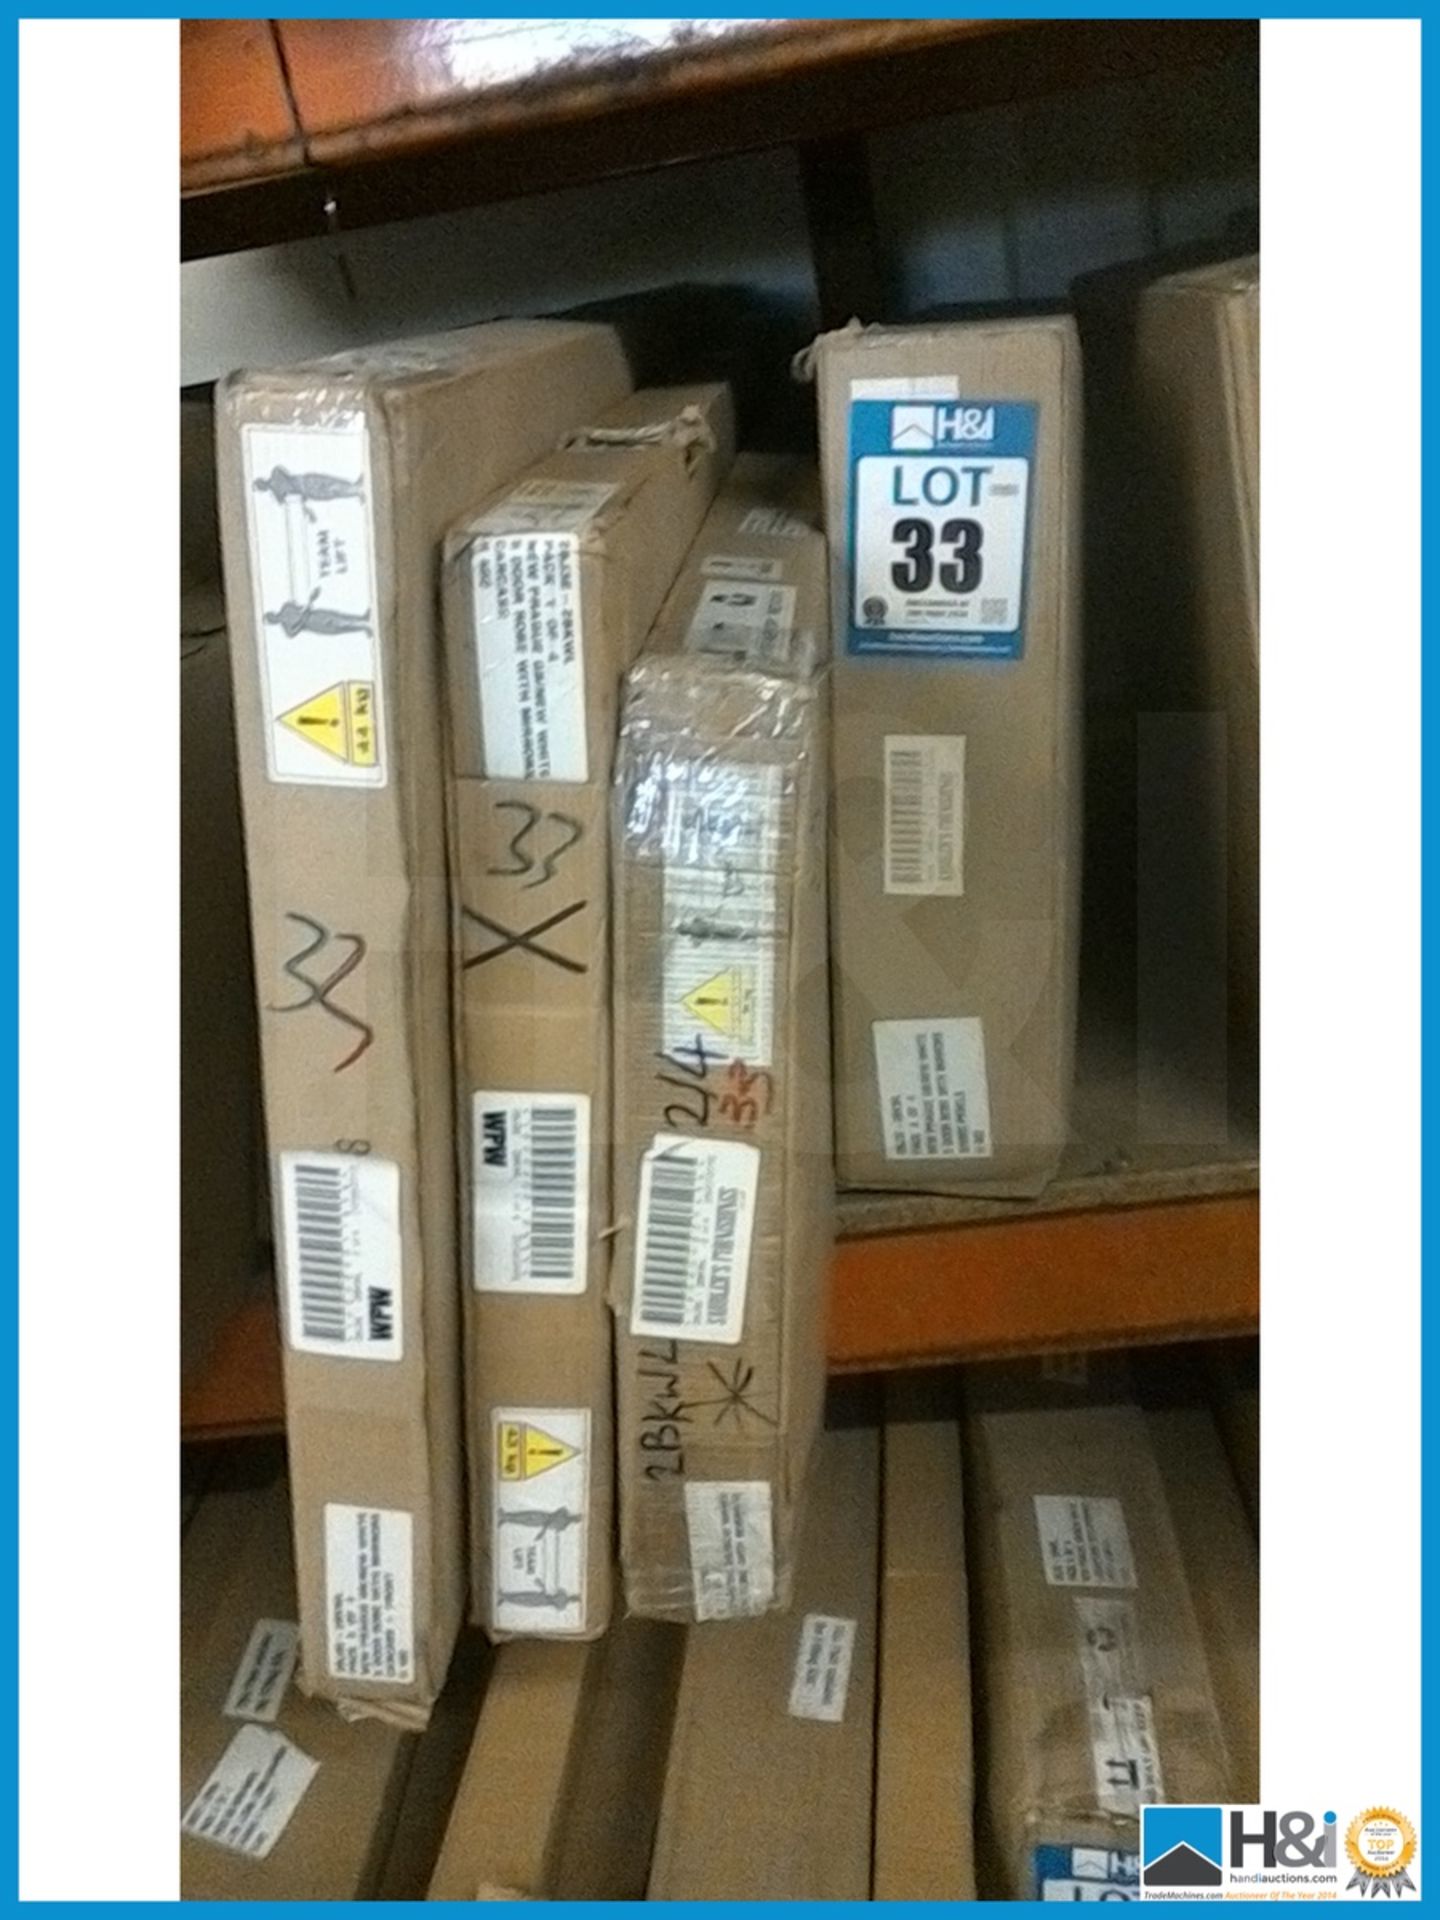 DAMAGED BOX ITEM A1 PRAGUE 5DOOR WARDROBE [WHITE] 199 x 201 x 53cm RRP £649 Appraisal: Viewing - Image 2 of 2